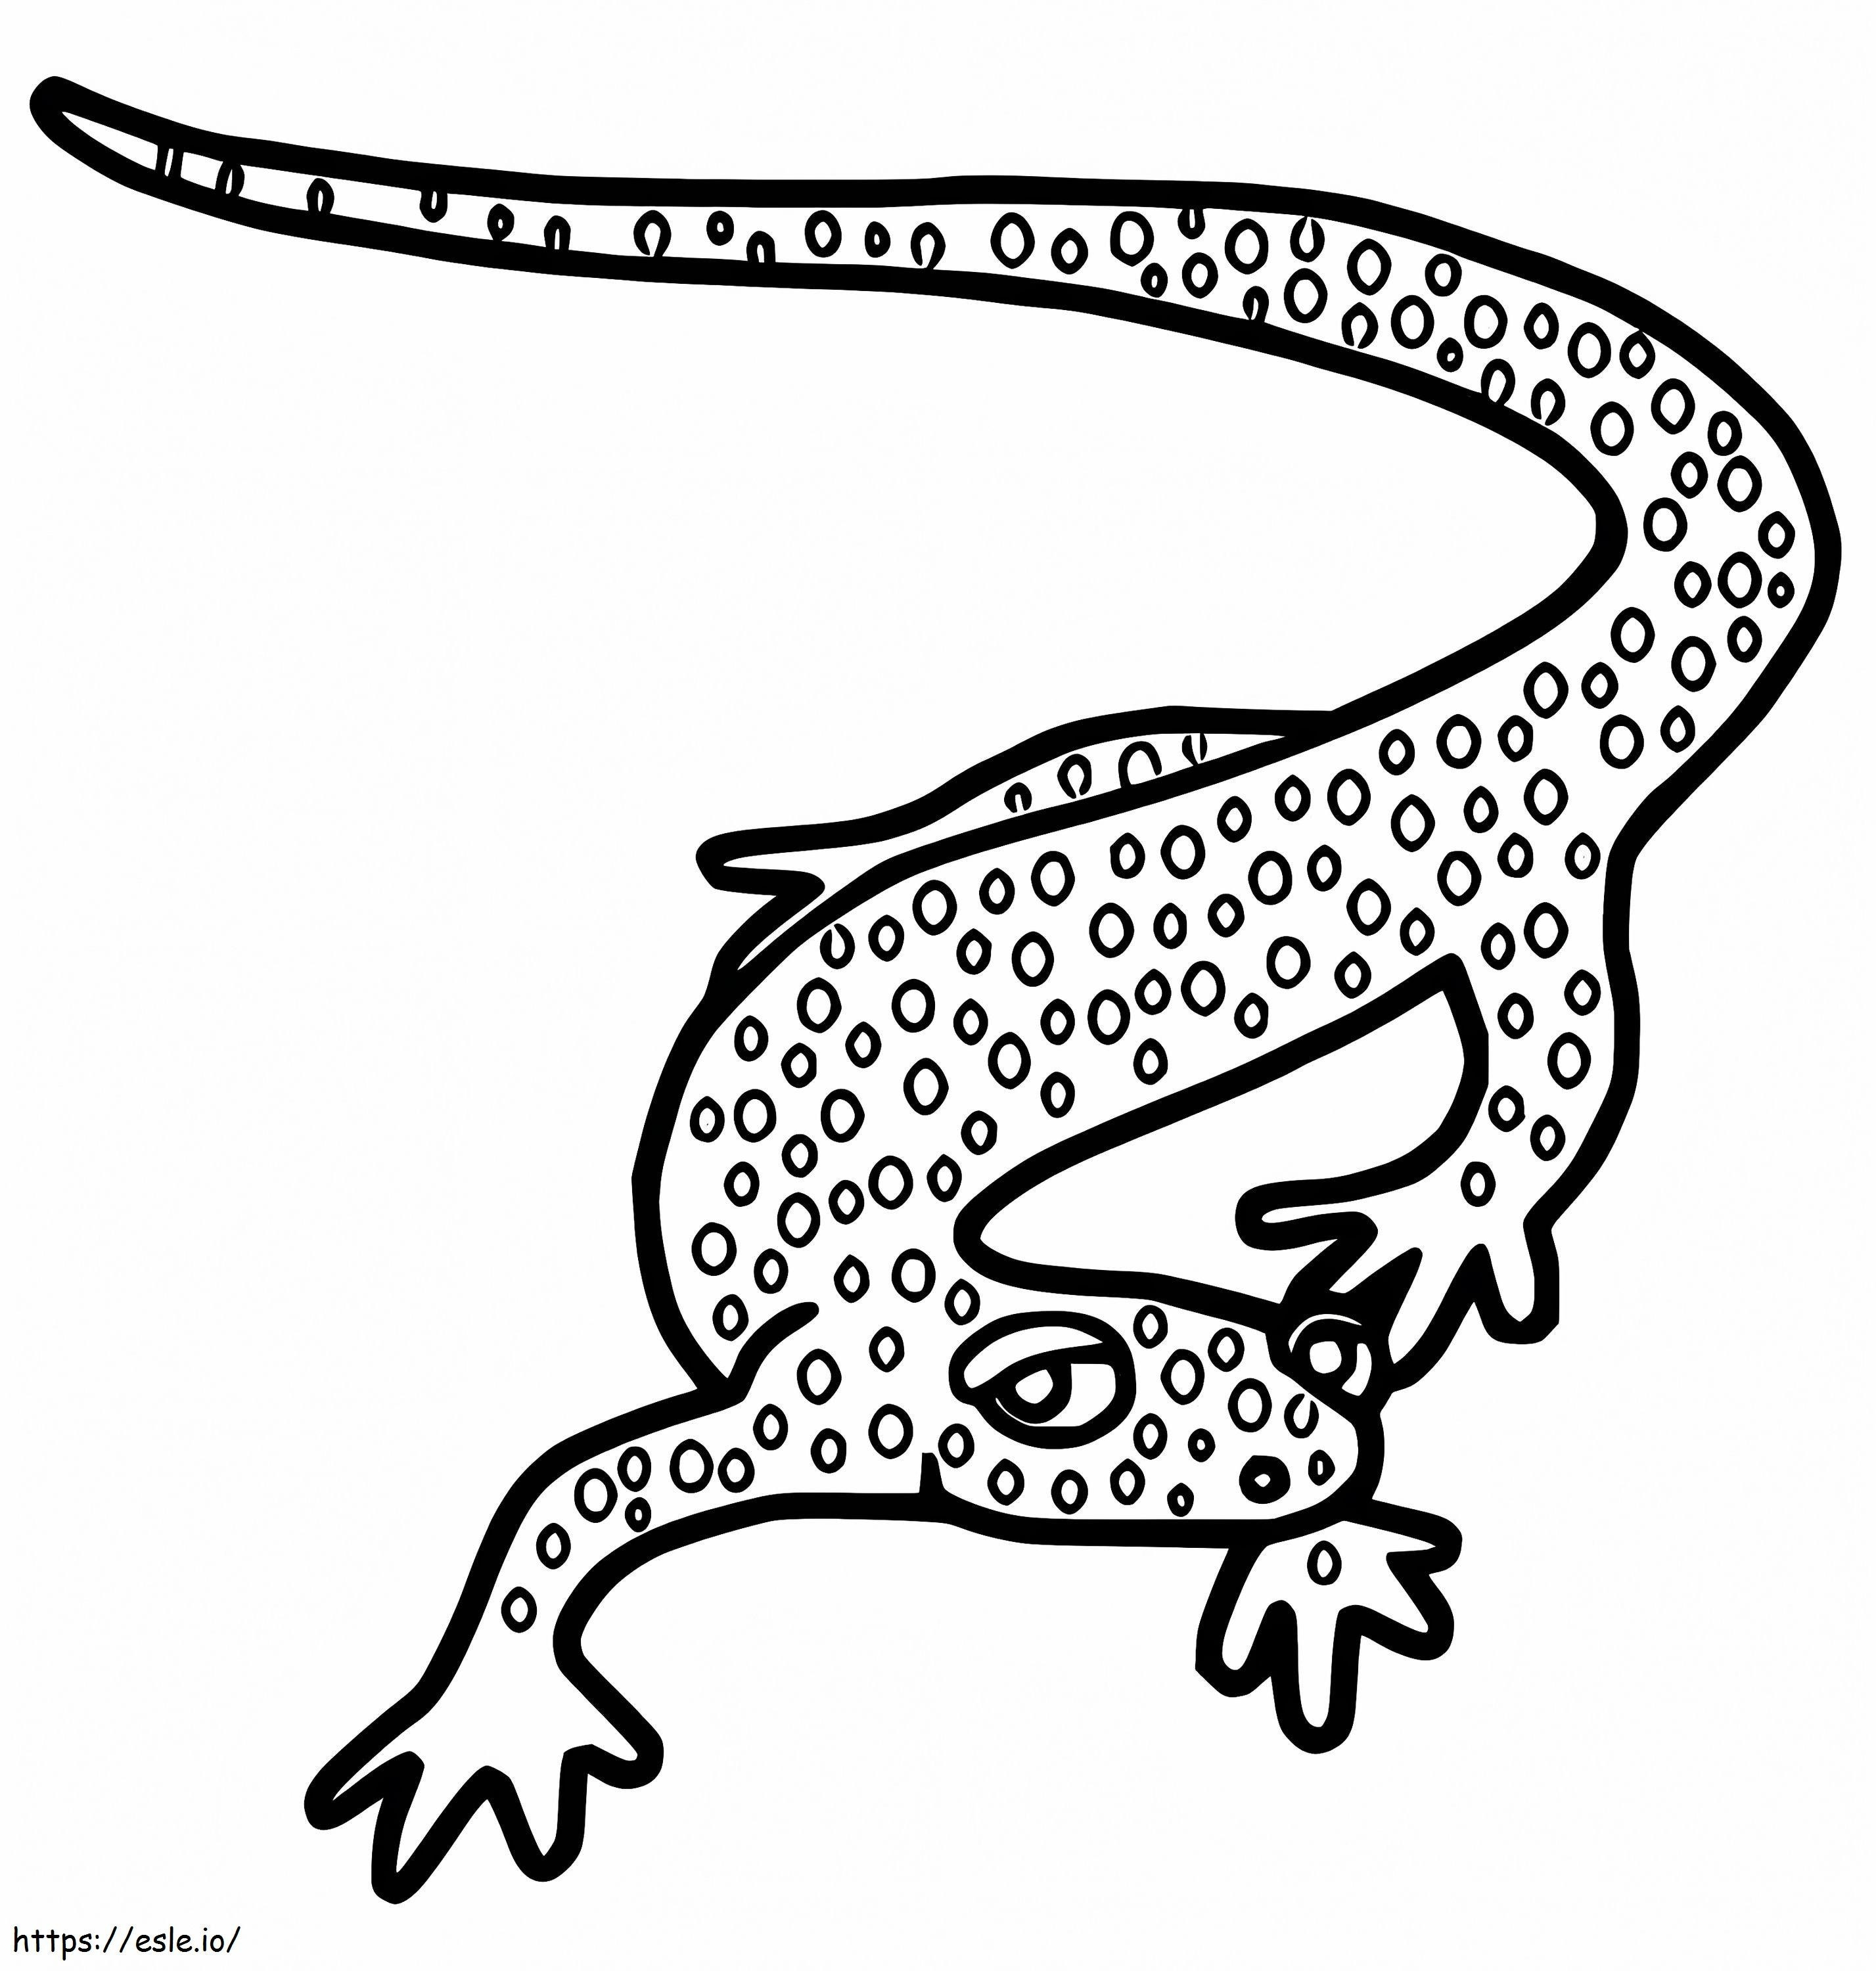 Appalachian Salamander coloring page